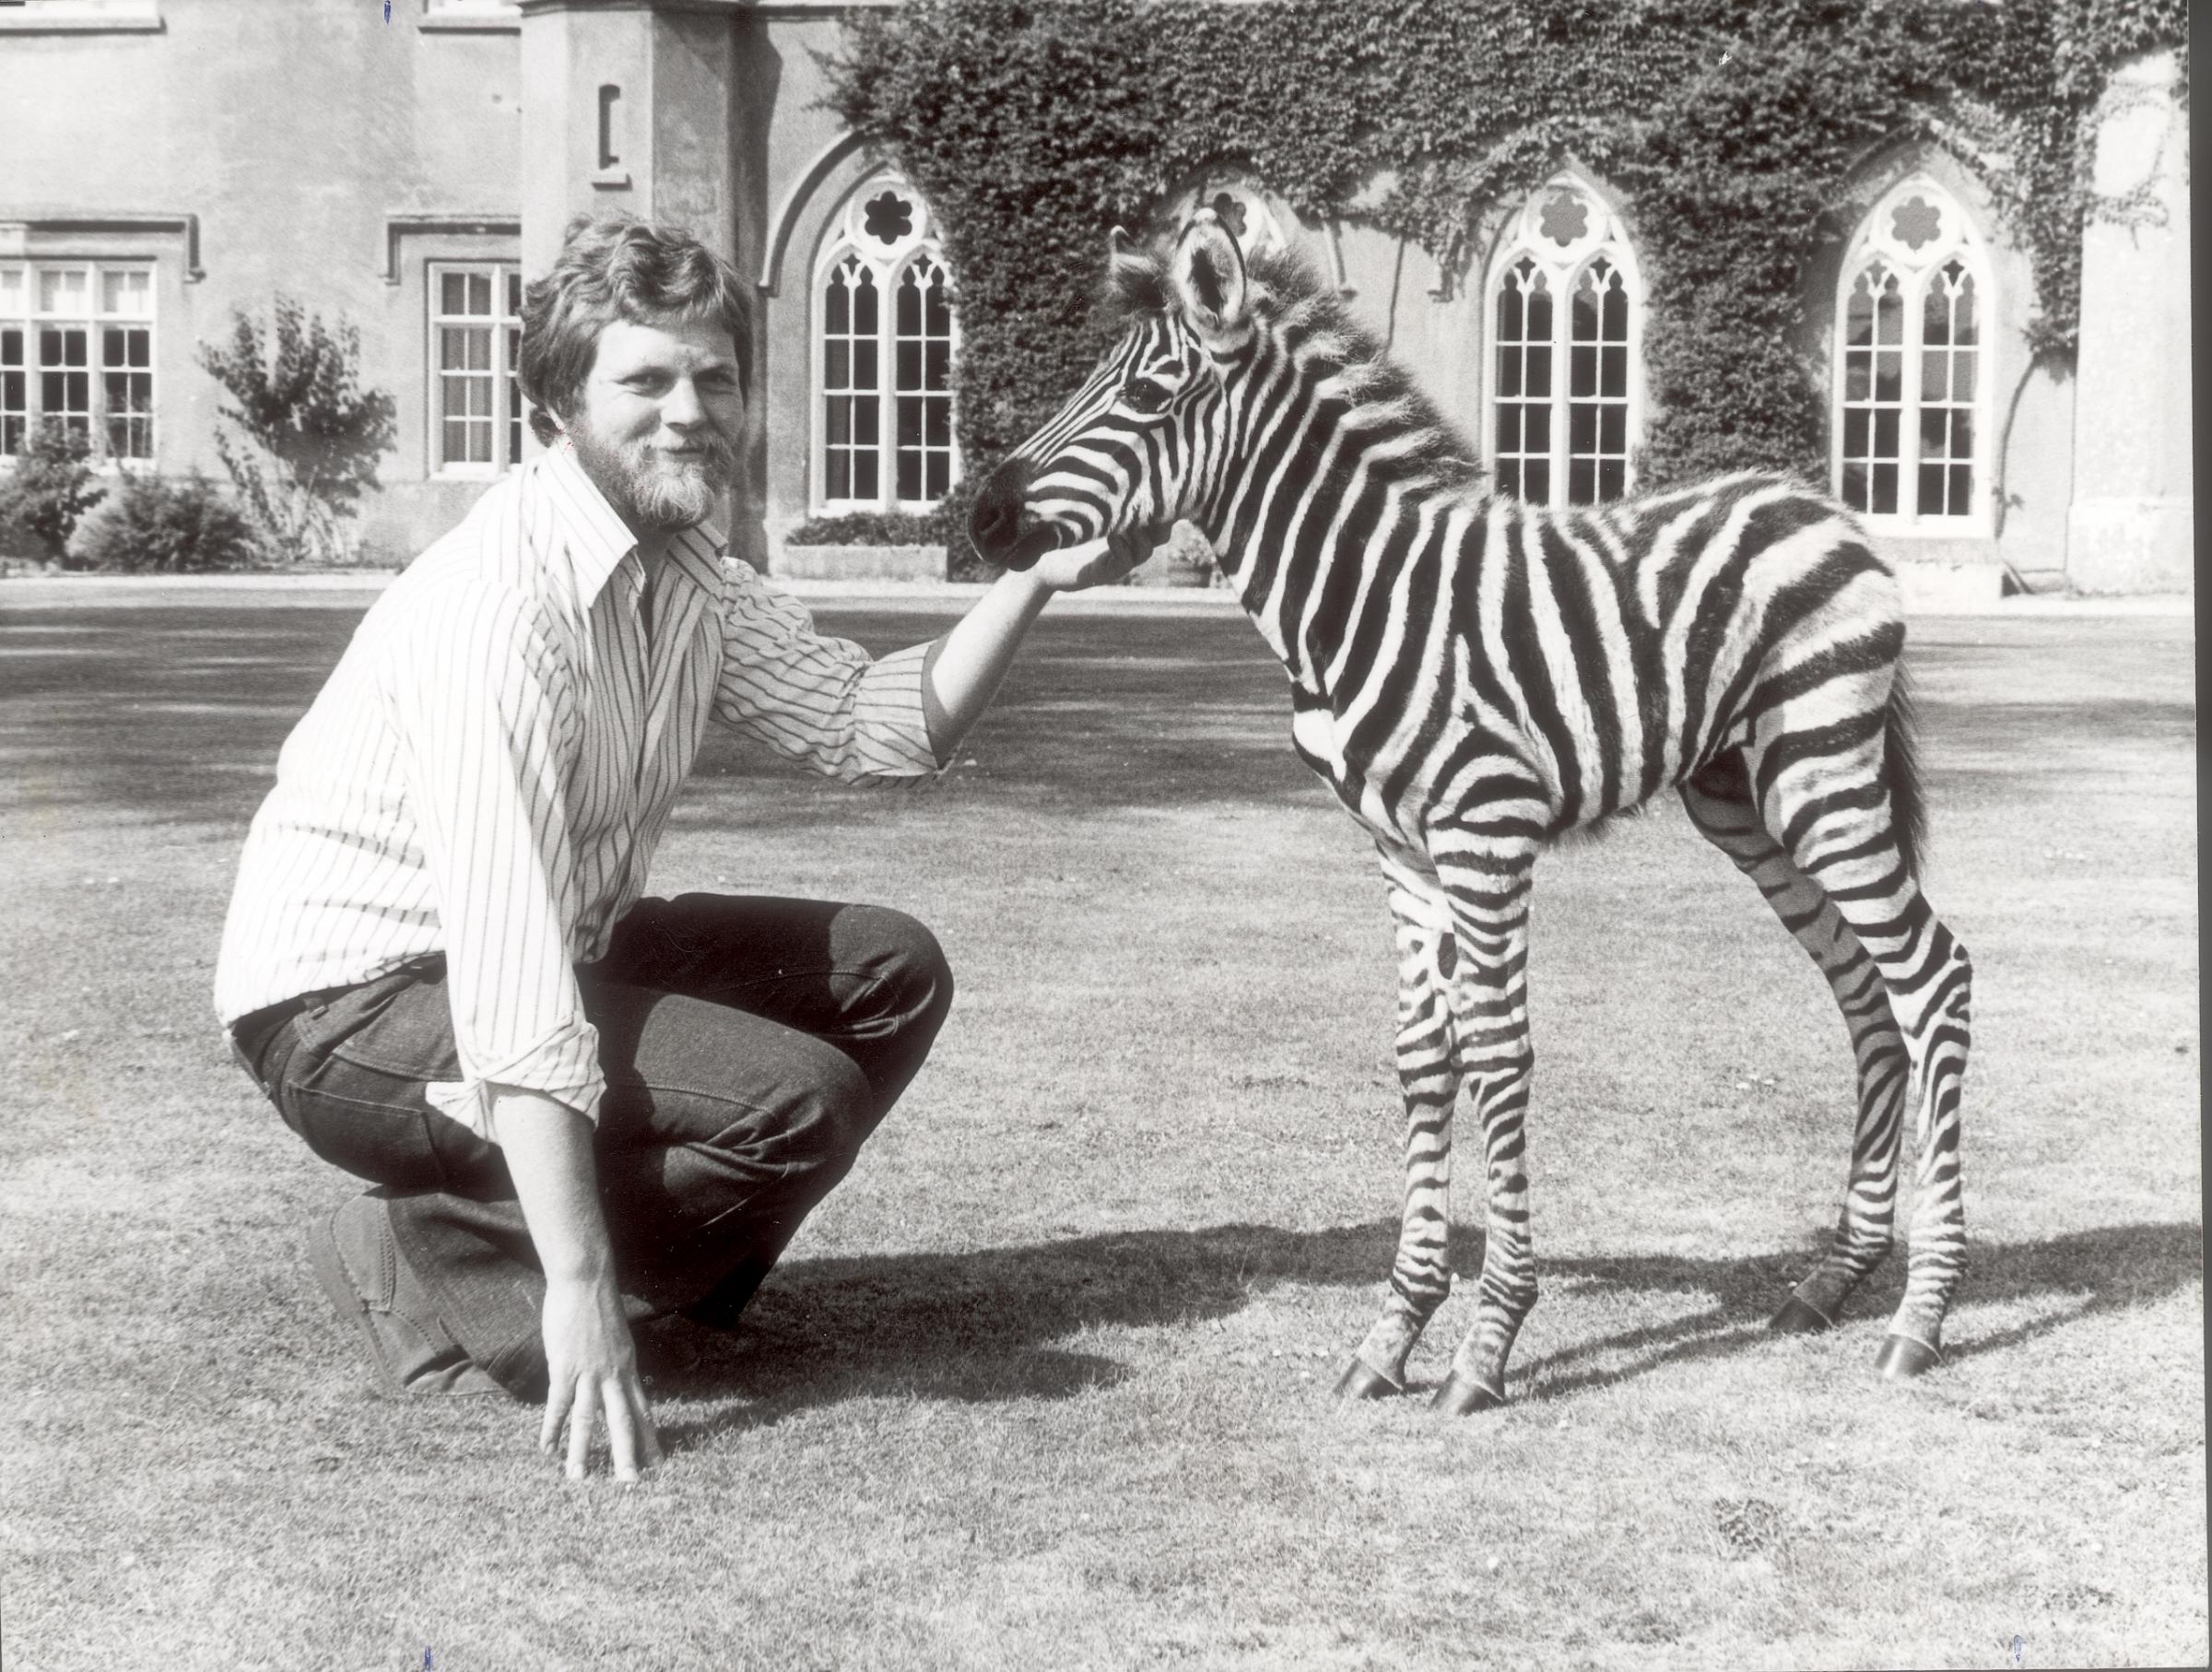 Heritage. David ASTON WITH BABY ZEBRA, MArwell Zoo, 1976